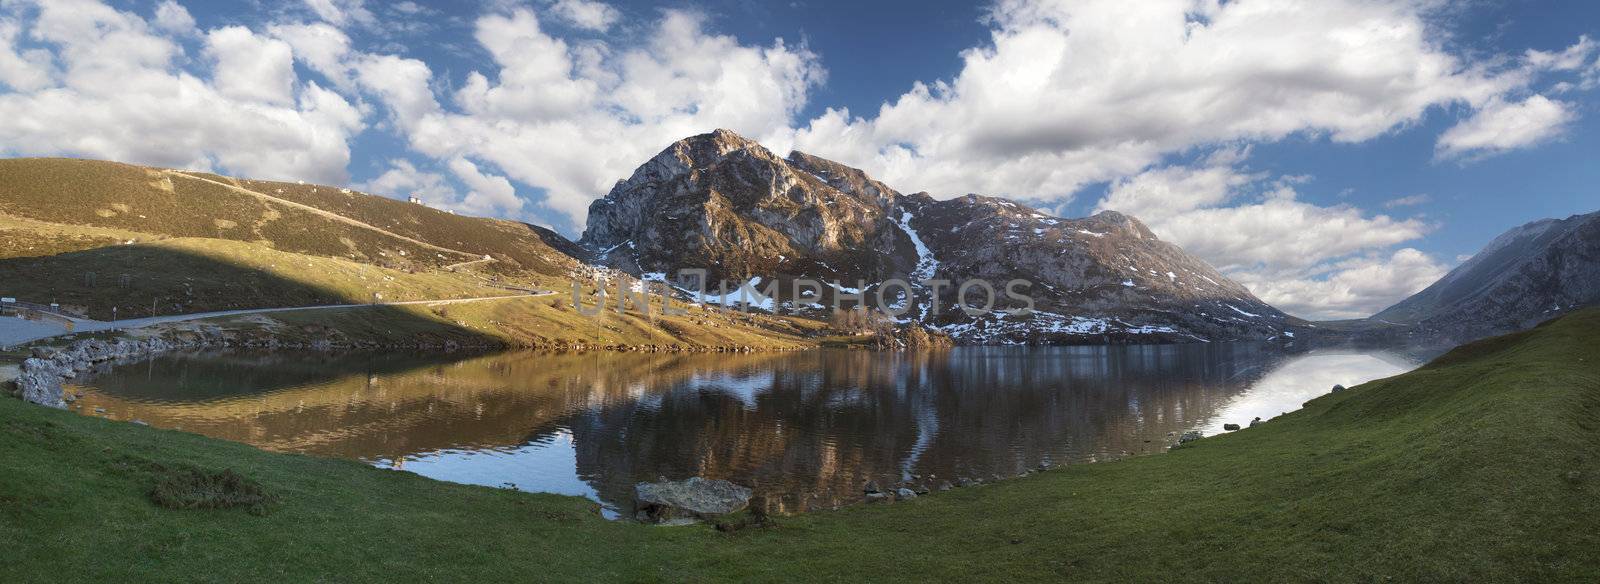 Scenic of the Enol lakeb in Asturias, Spain